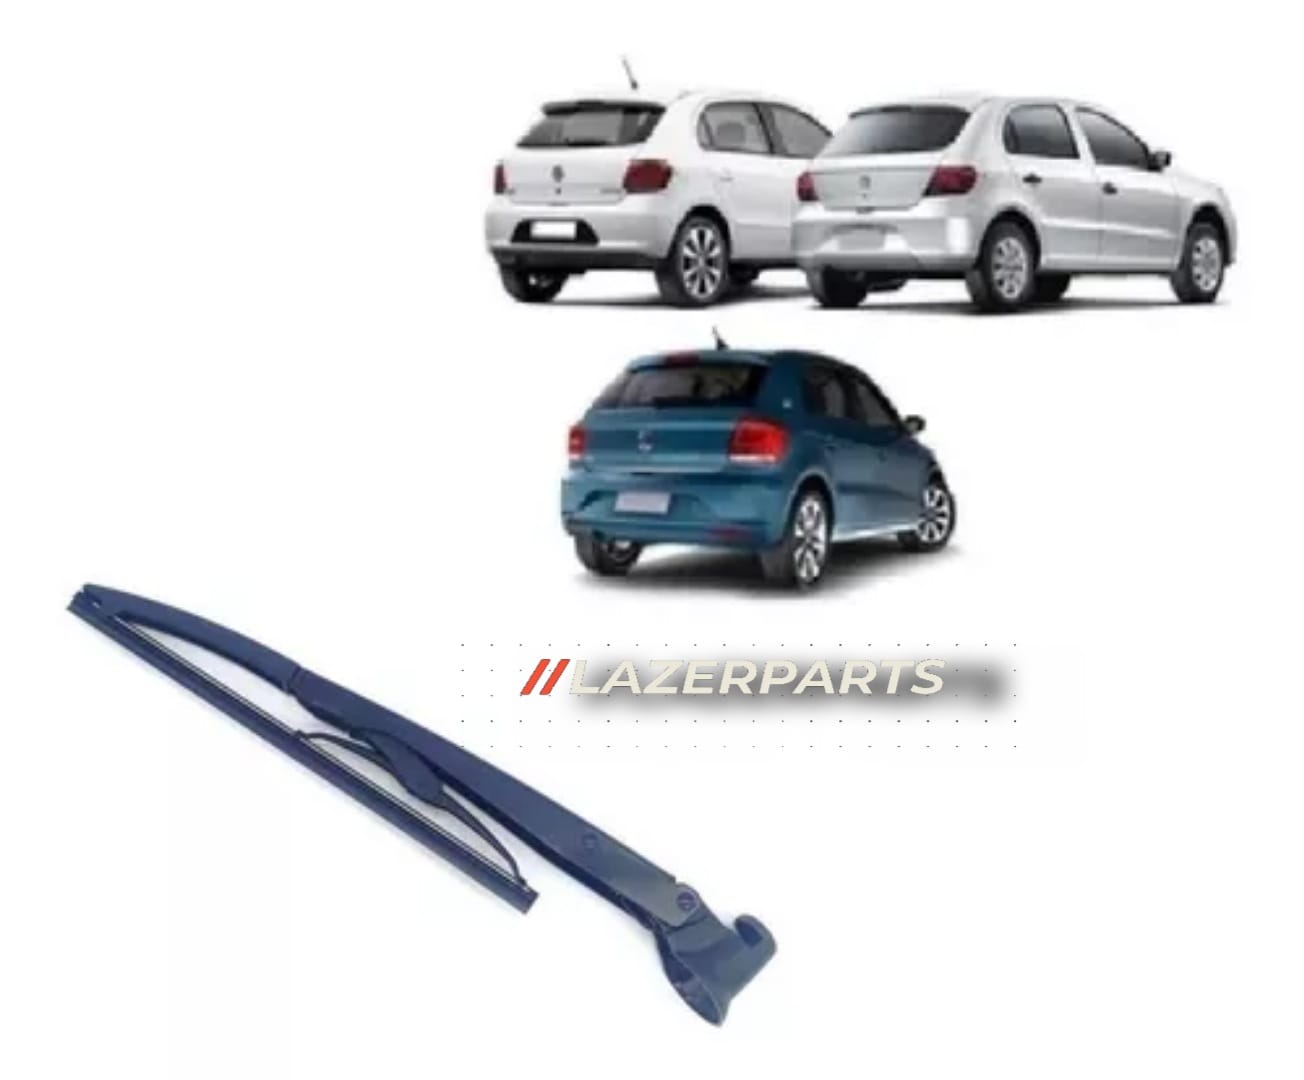 Limpiaparabrisas Trasero para Volkswagen Gol – LazerParts